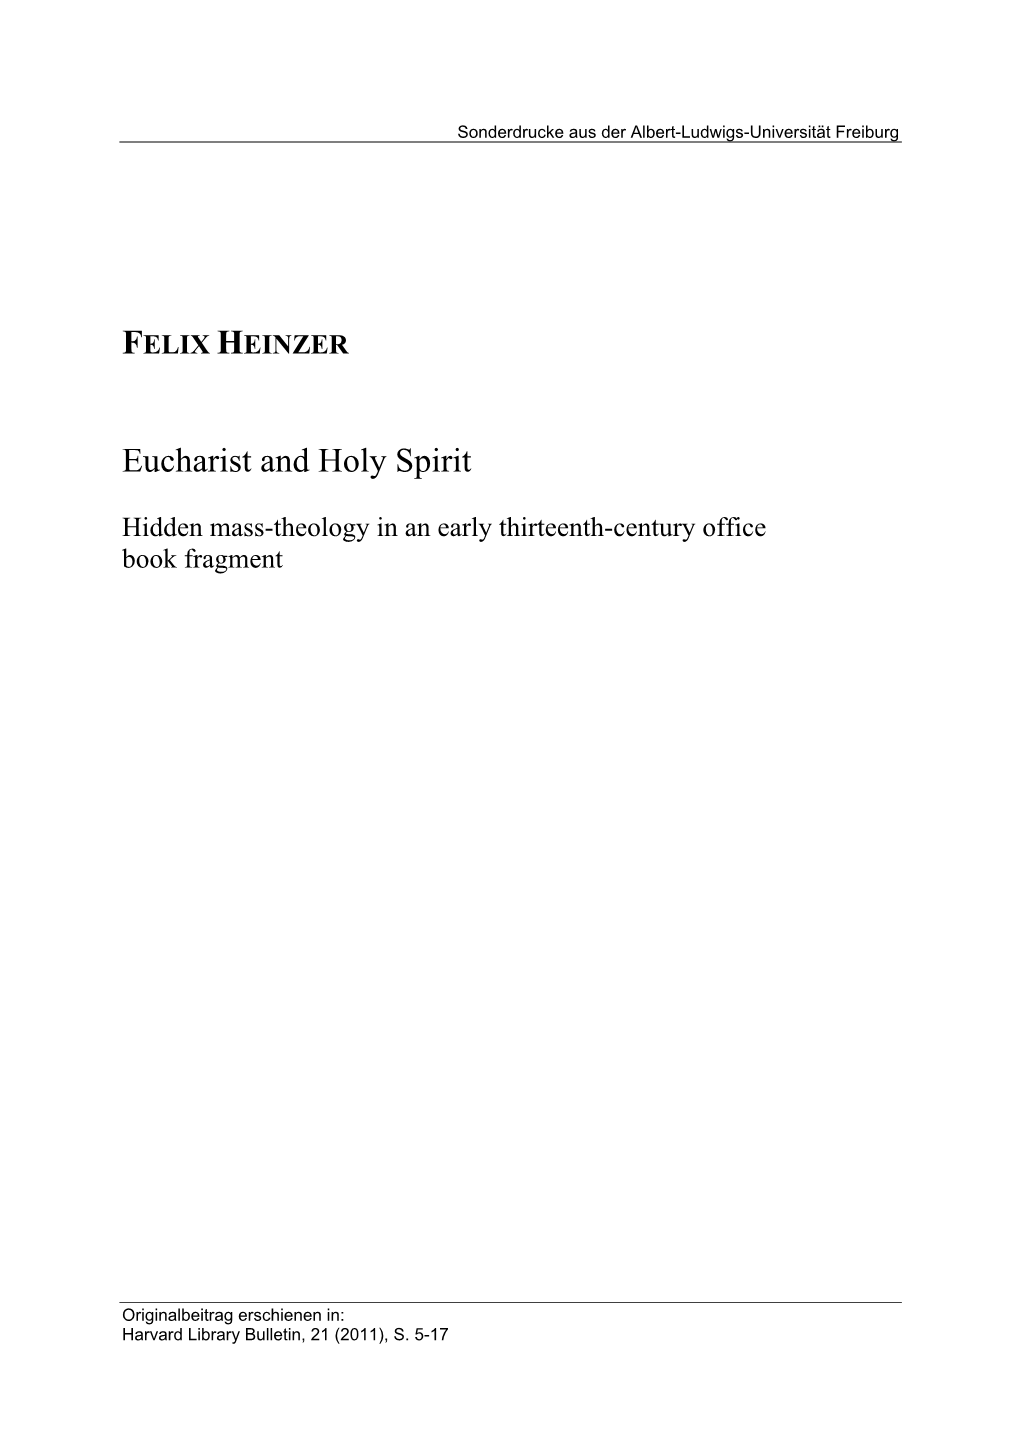 FELIX HEINZER Eucharist and Holy Spirit